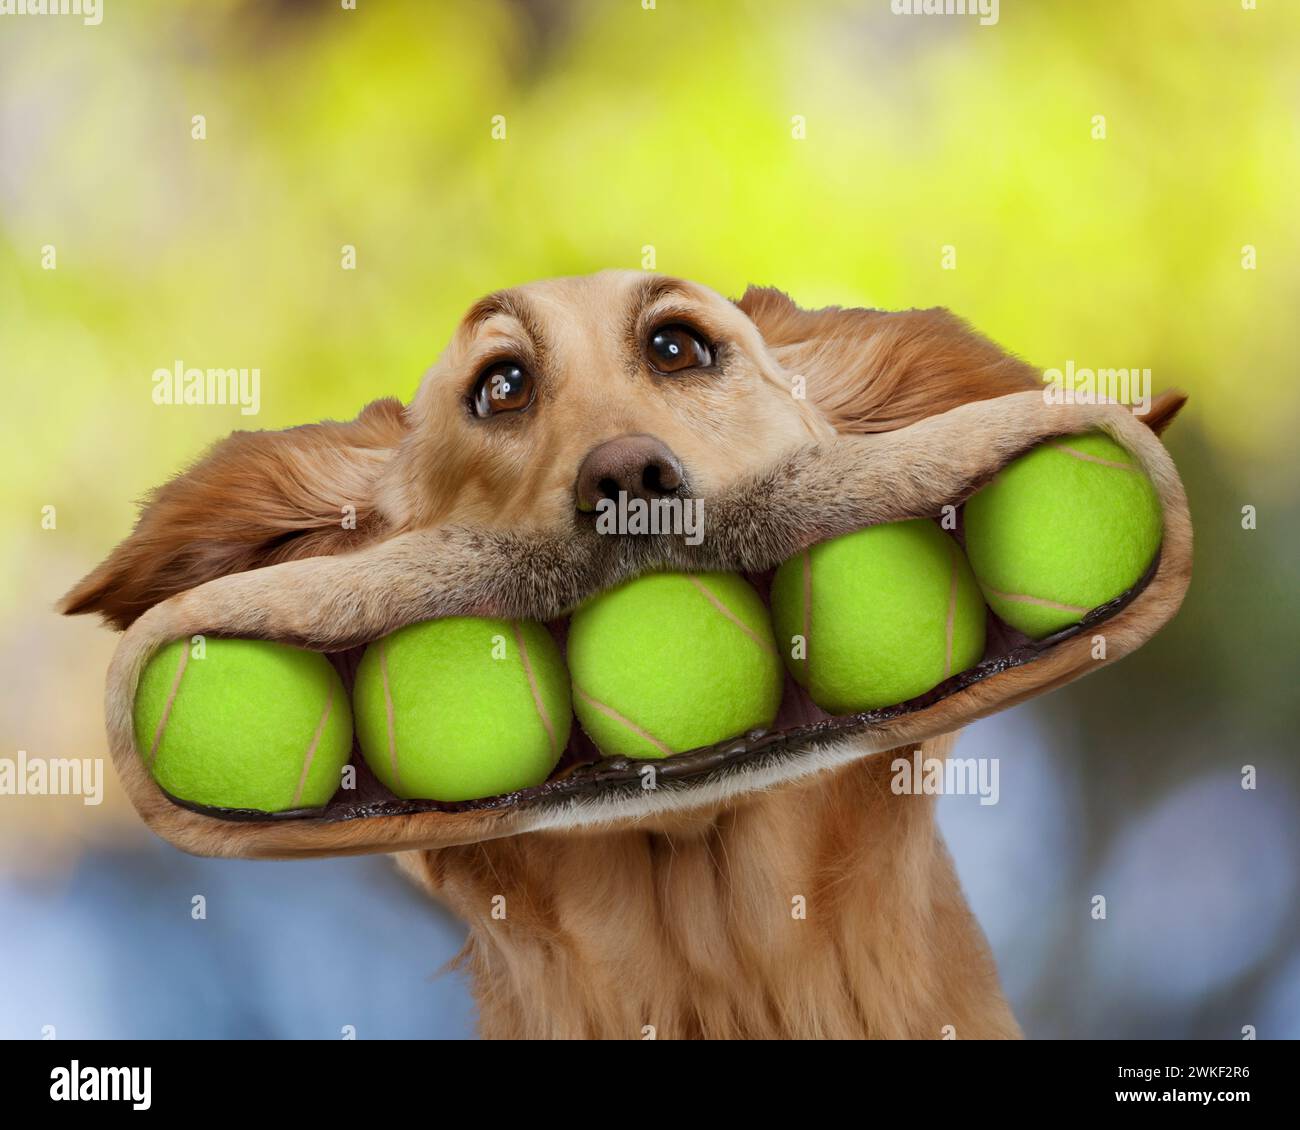 Un chien Golden Retriever drôle a cinq balles de tennis dans sa bouche dans une image sur l'excès, l'enthousiasme, le comportement du chien et plus encore. Banque D'Images